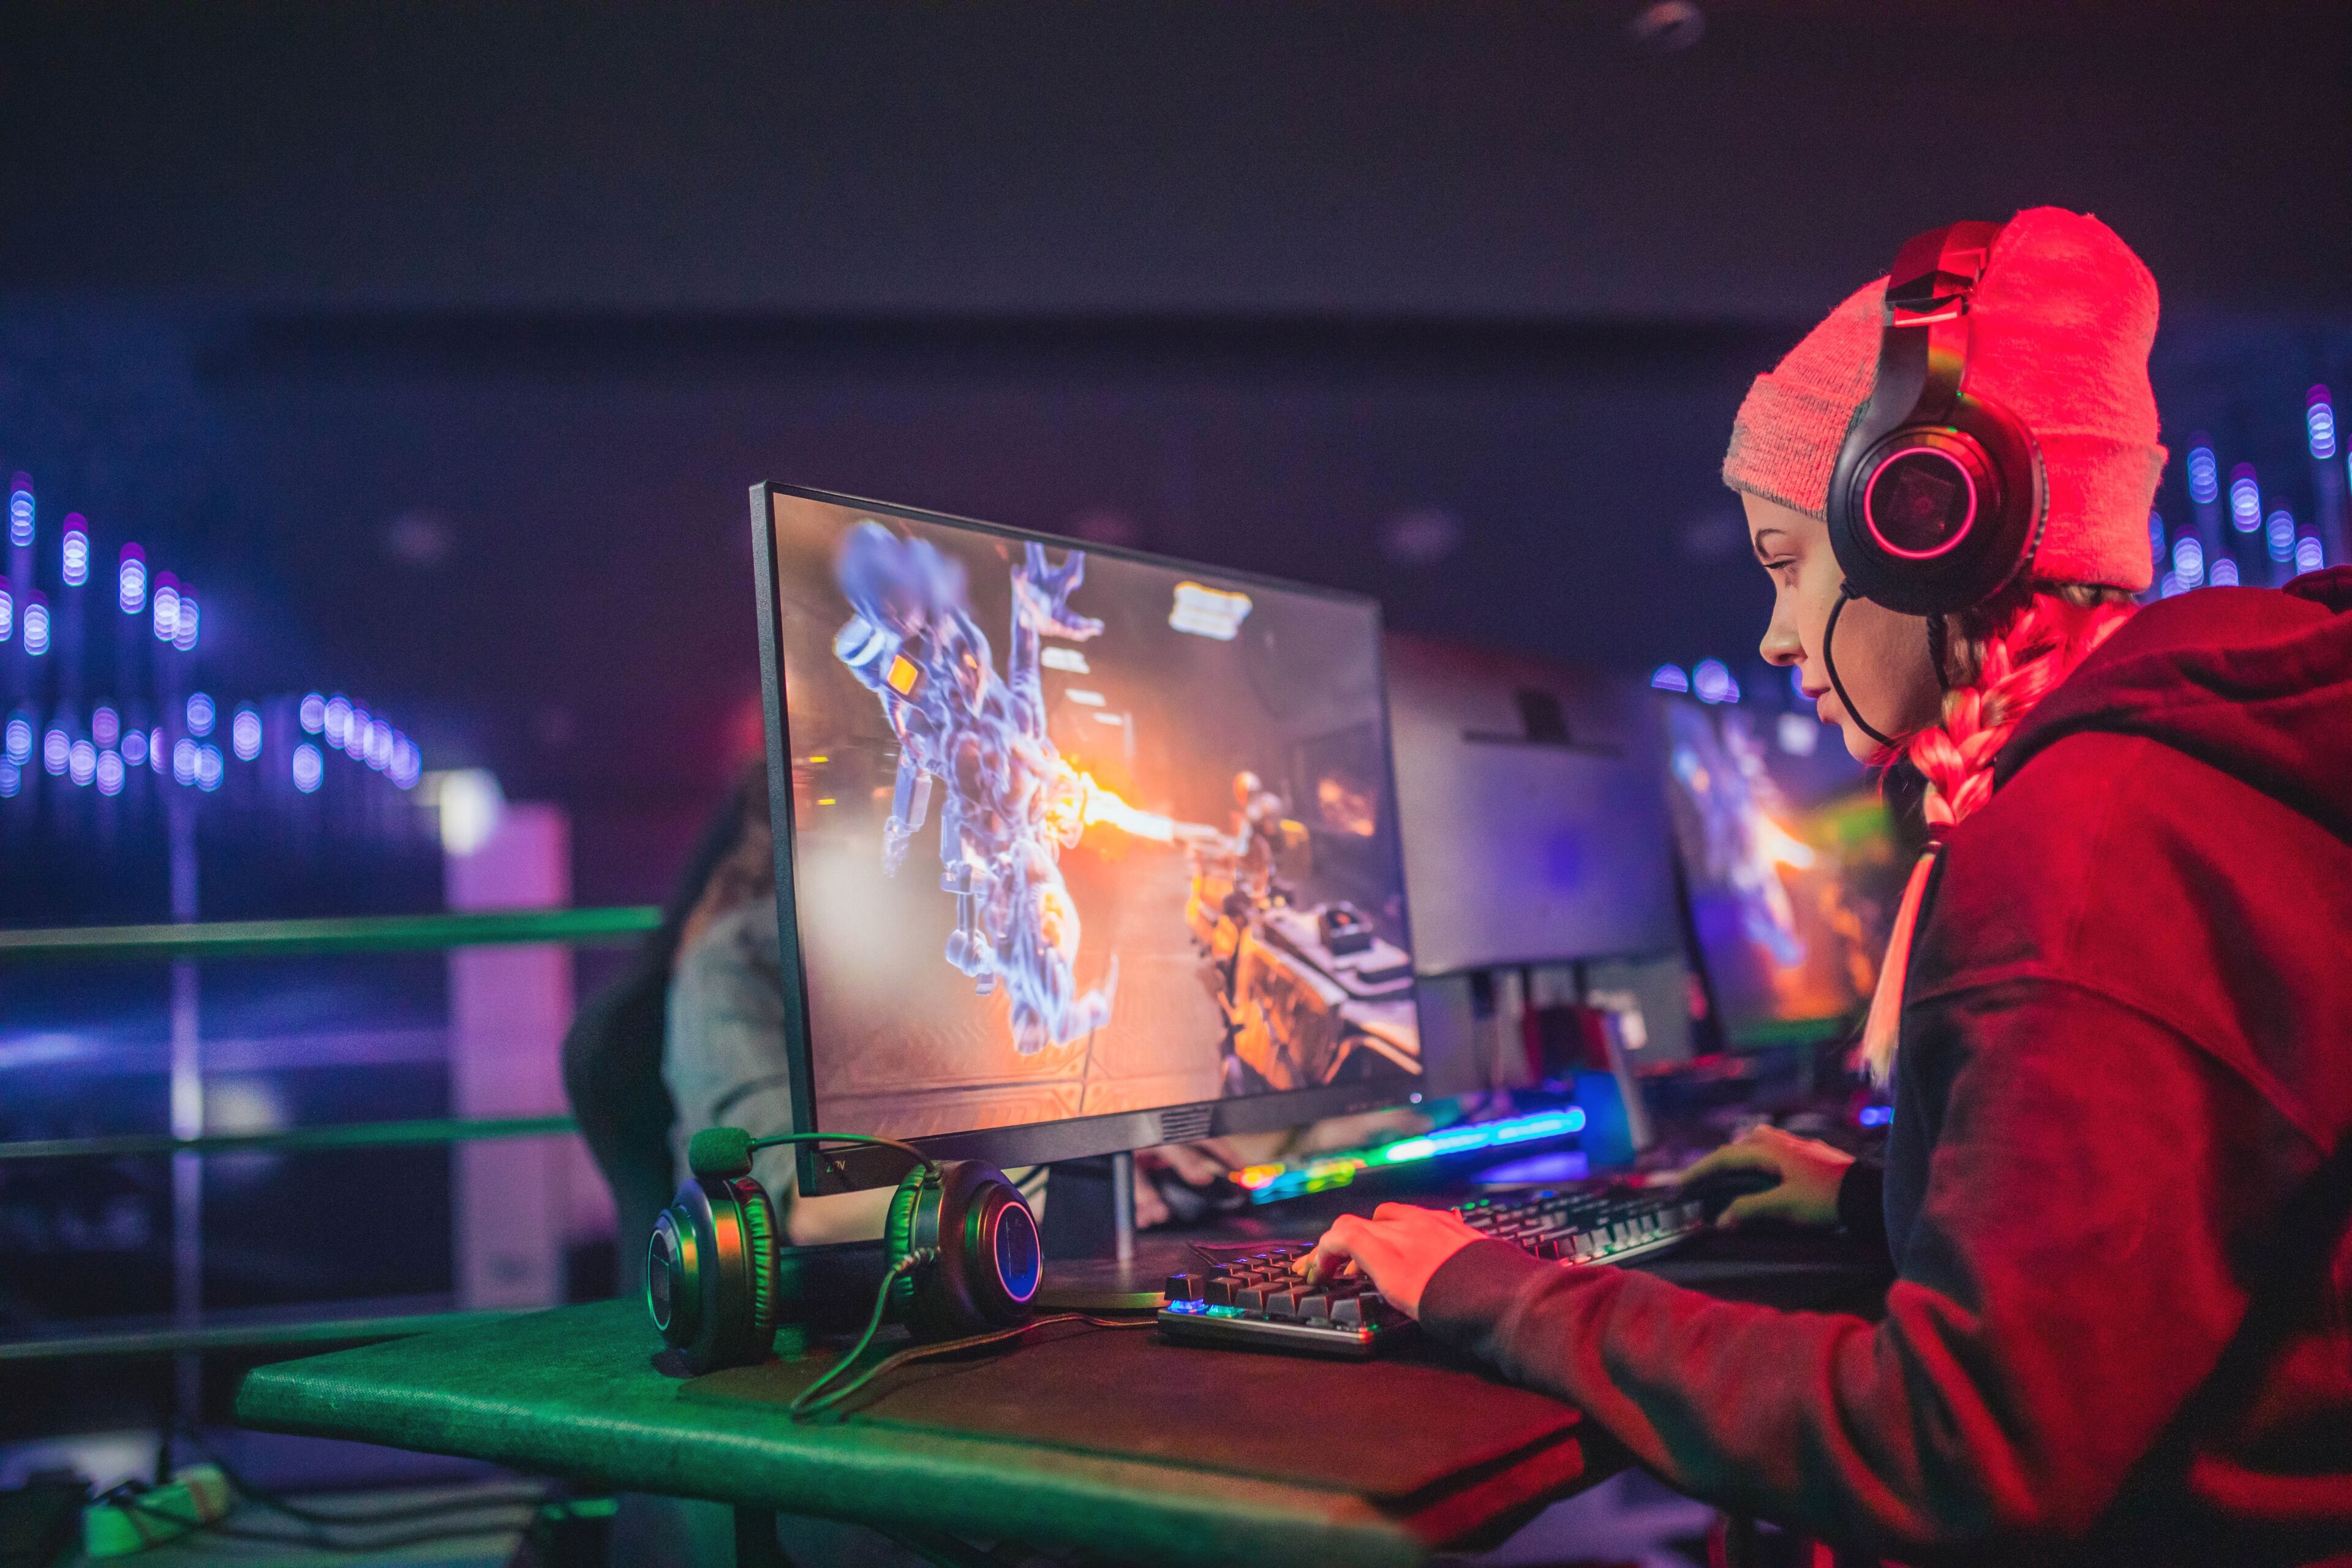 Un jugador enfocado con gorro rojo y auriculares juega un videojuego competitivo en una arena de eSports iluminada.